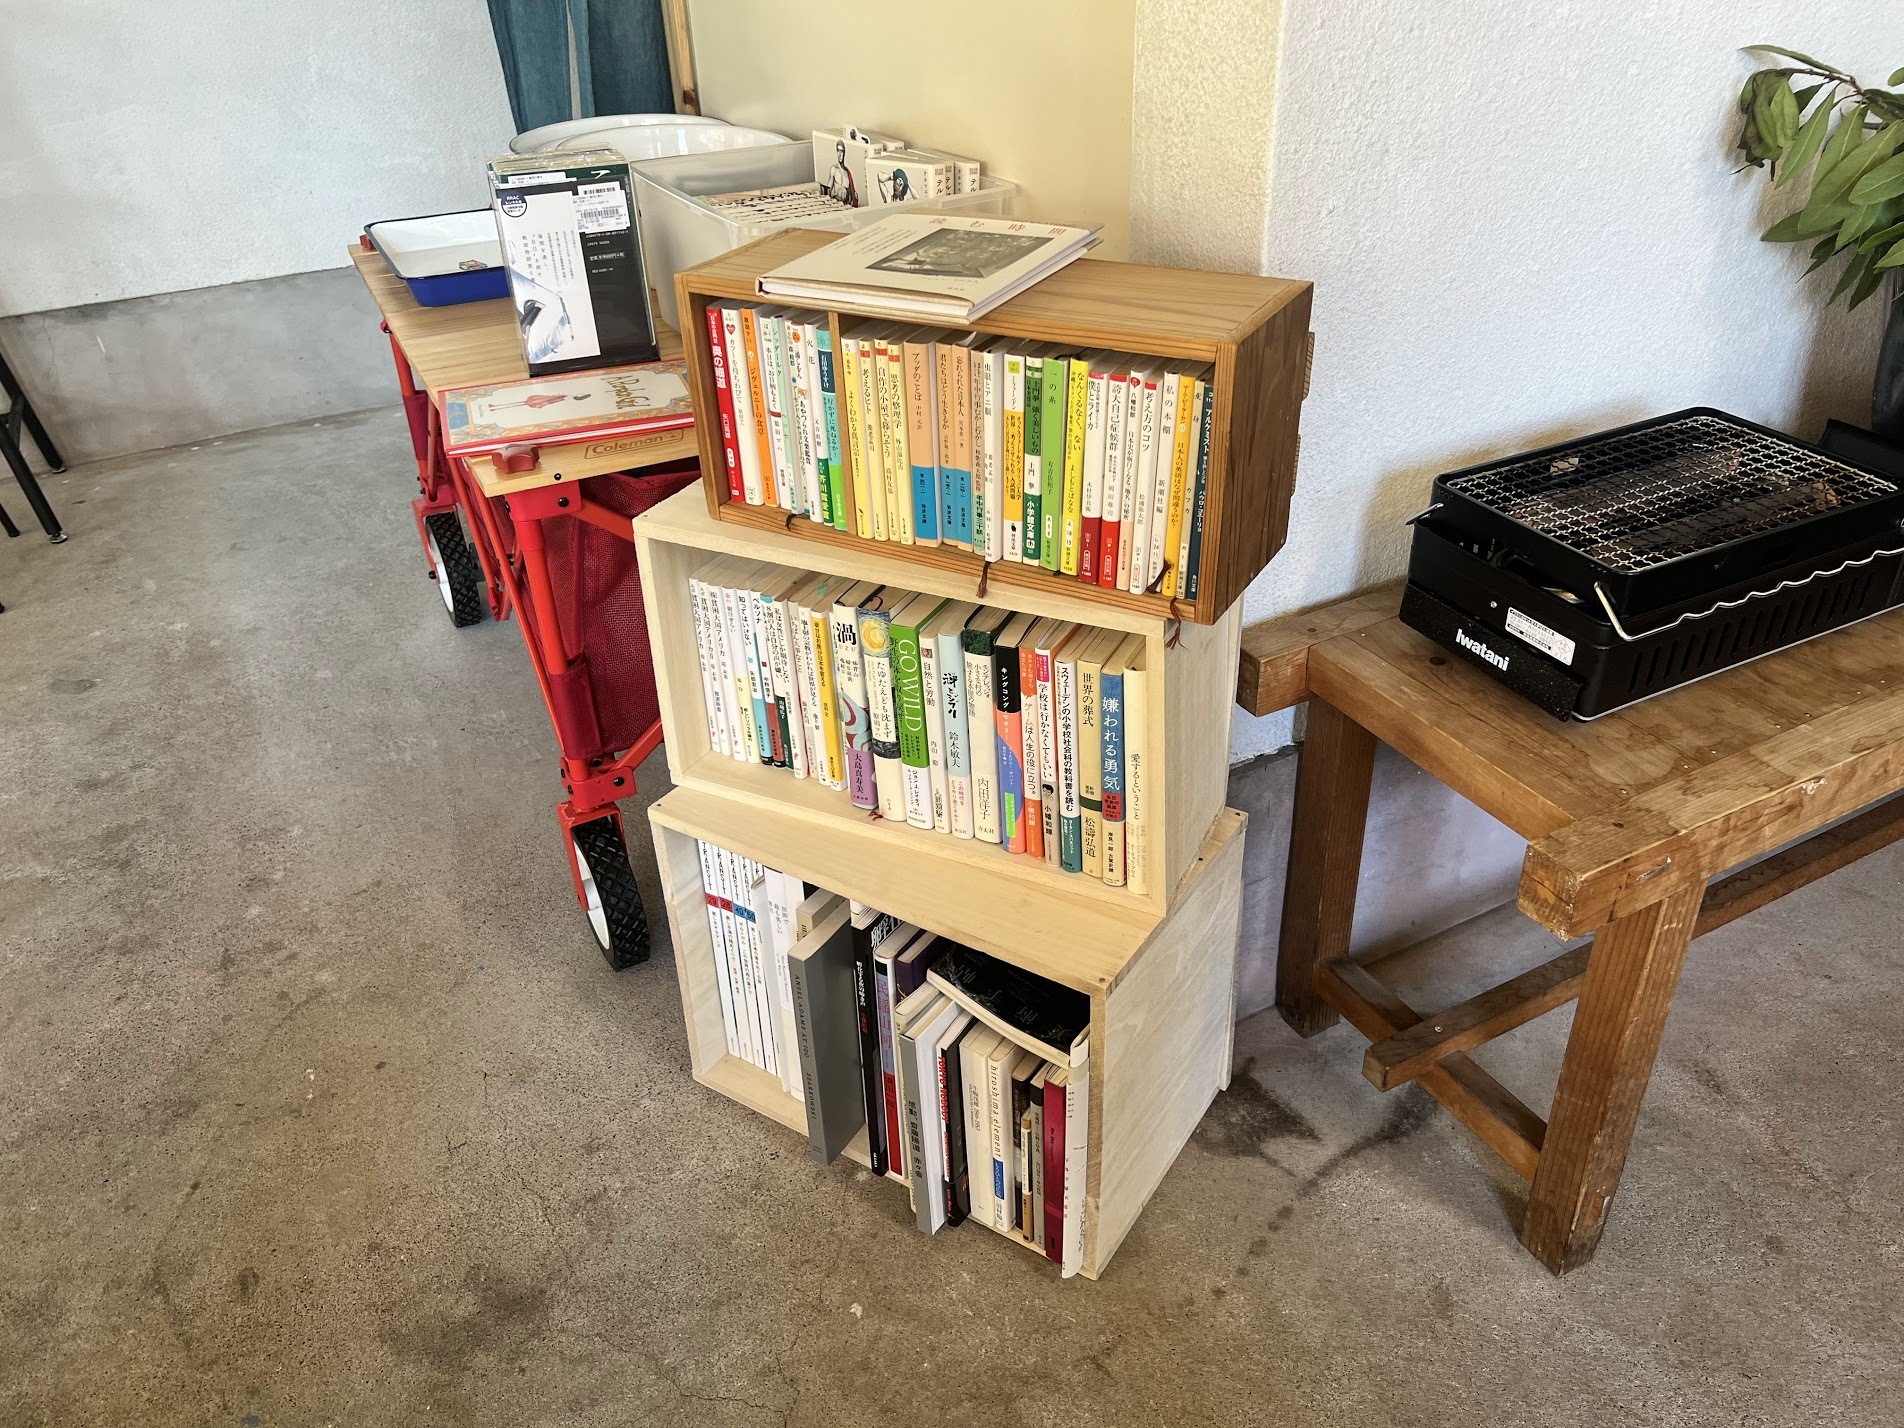 ブックカフェのために手作りした本棚だそうです